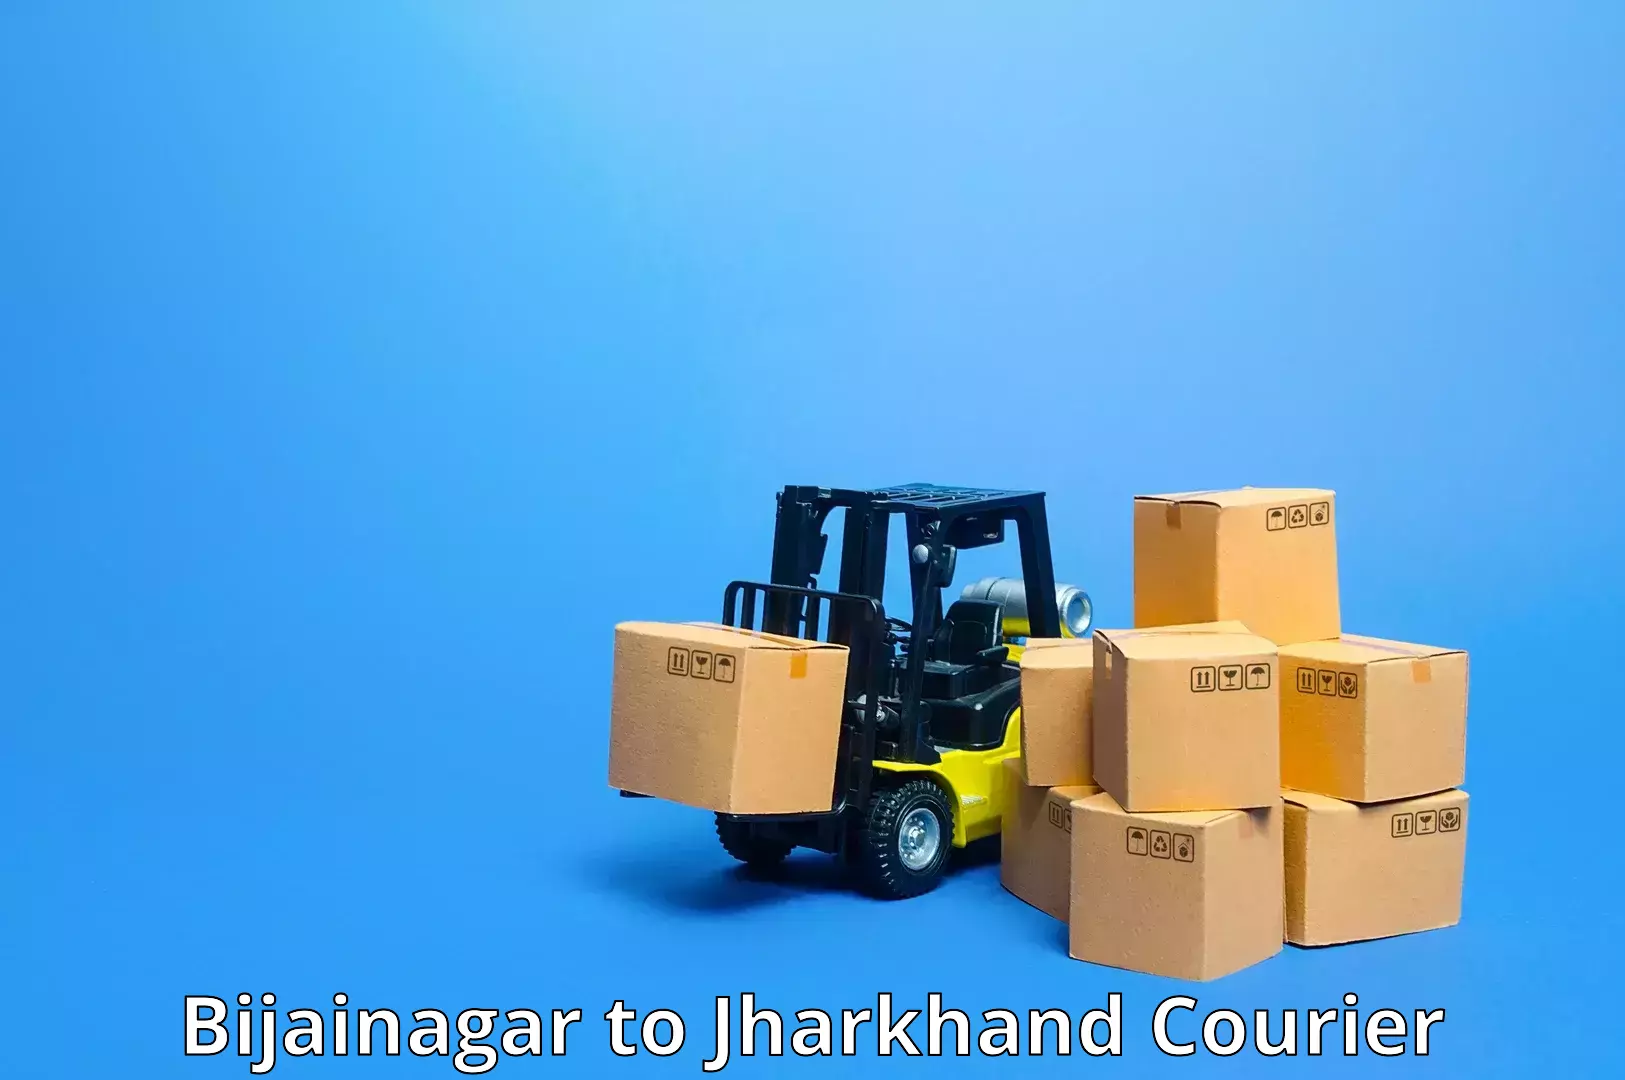 24/7 courier service Bijainagar to IIT Dhanbad